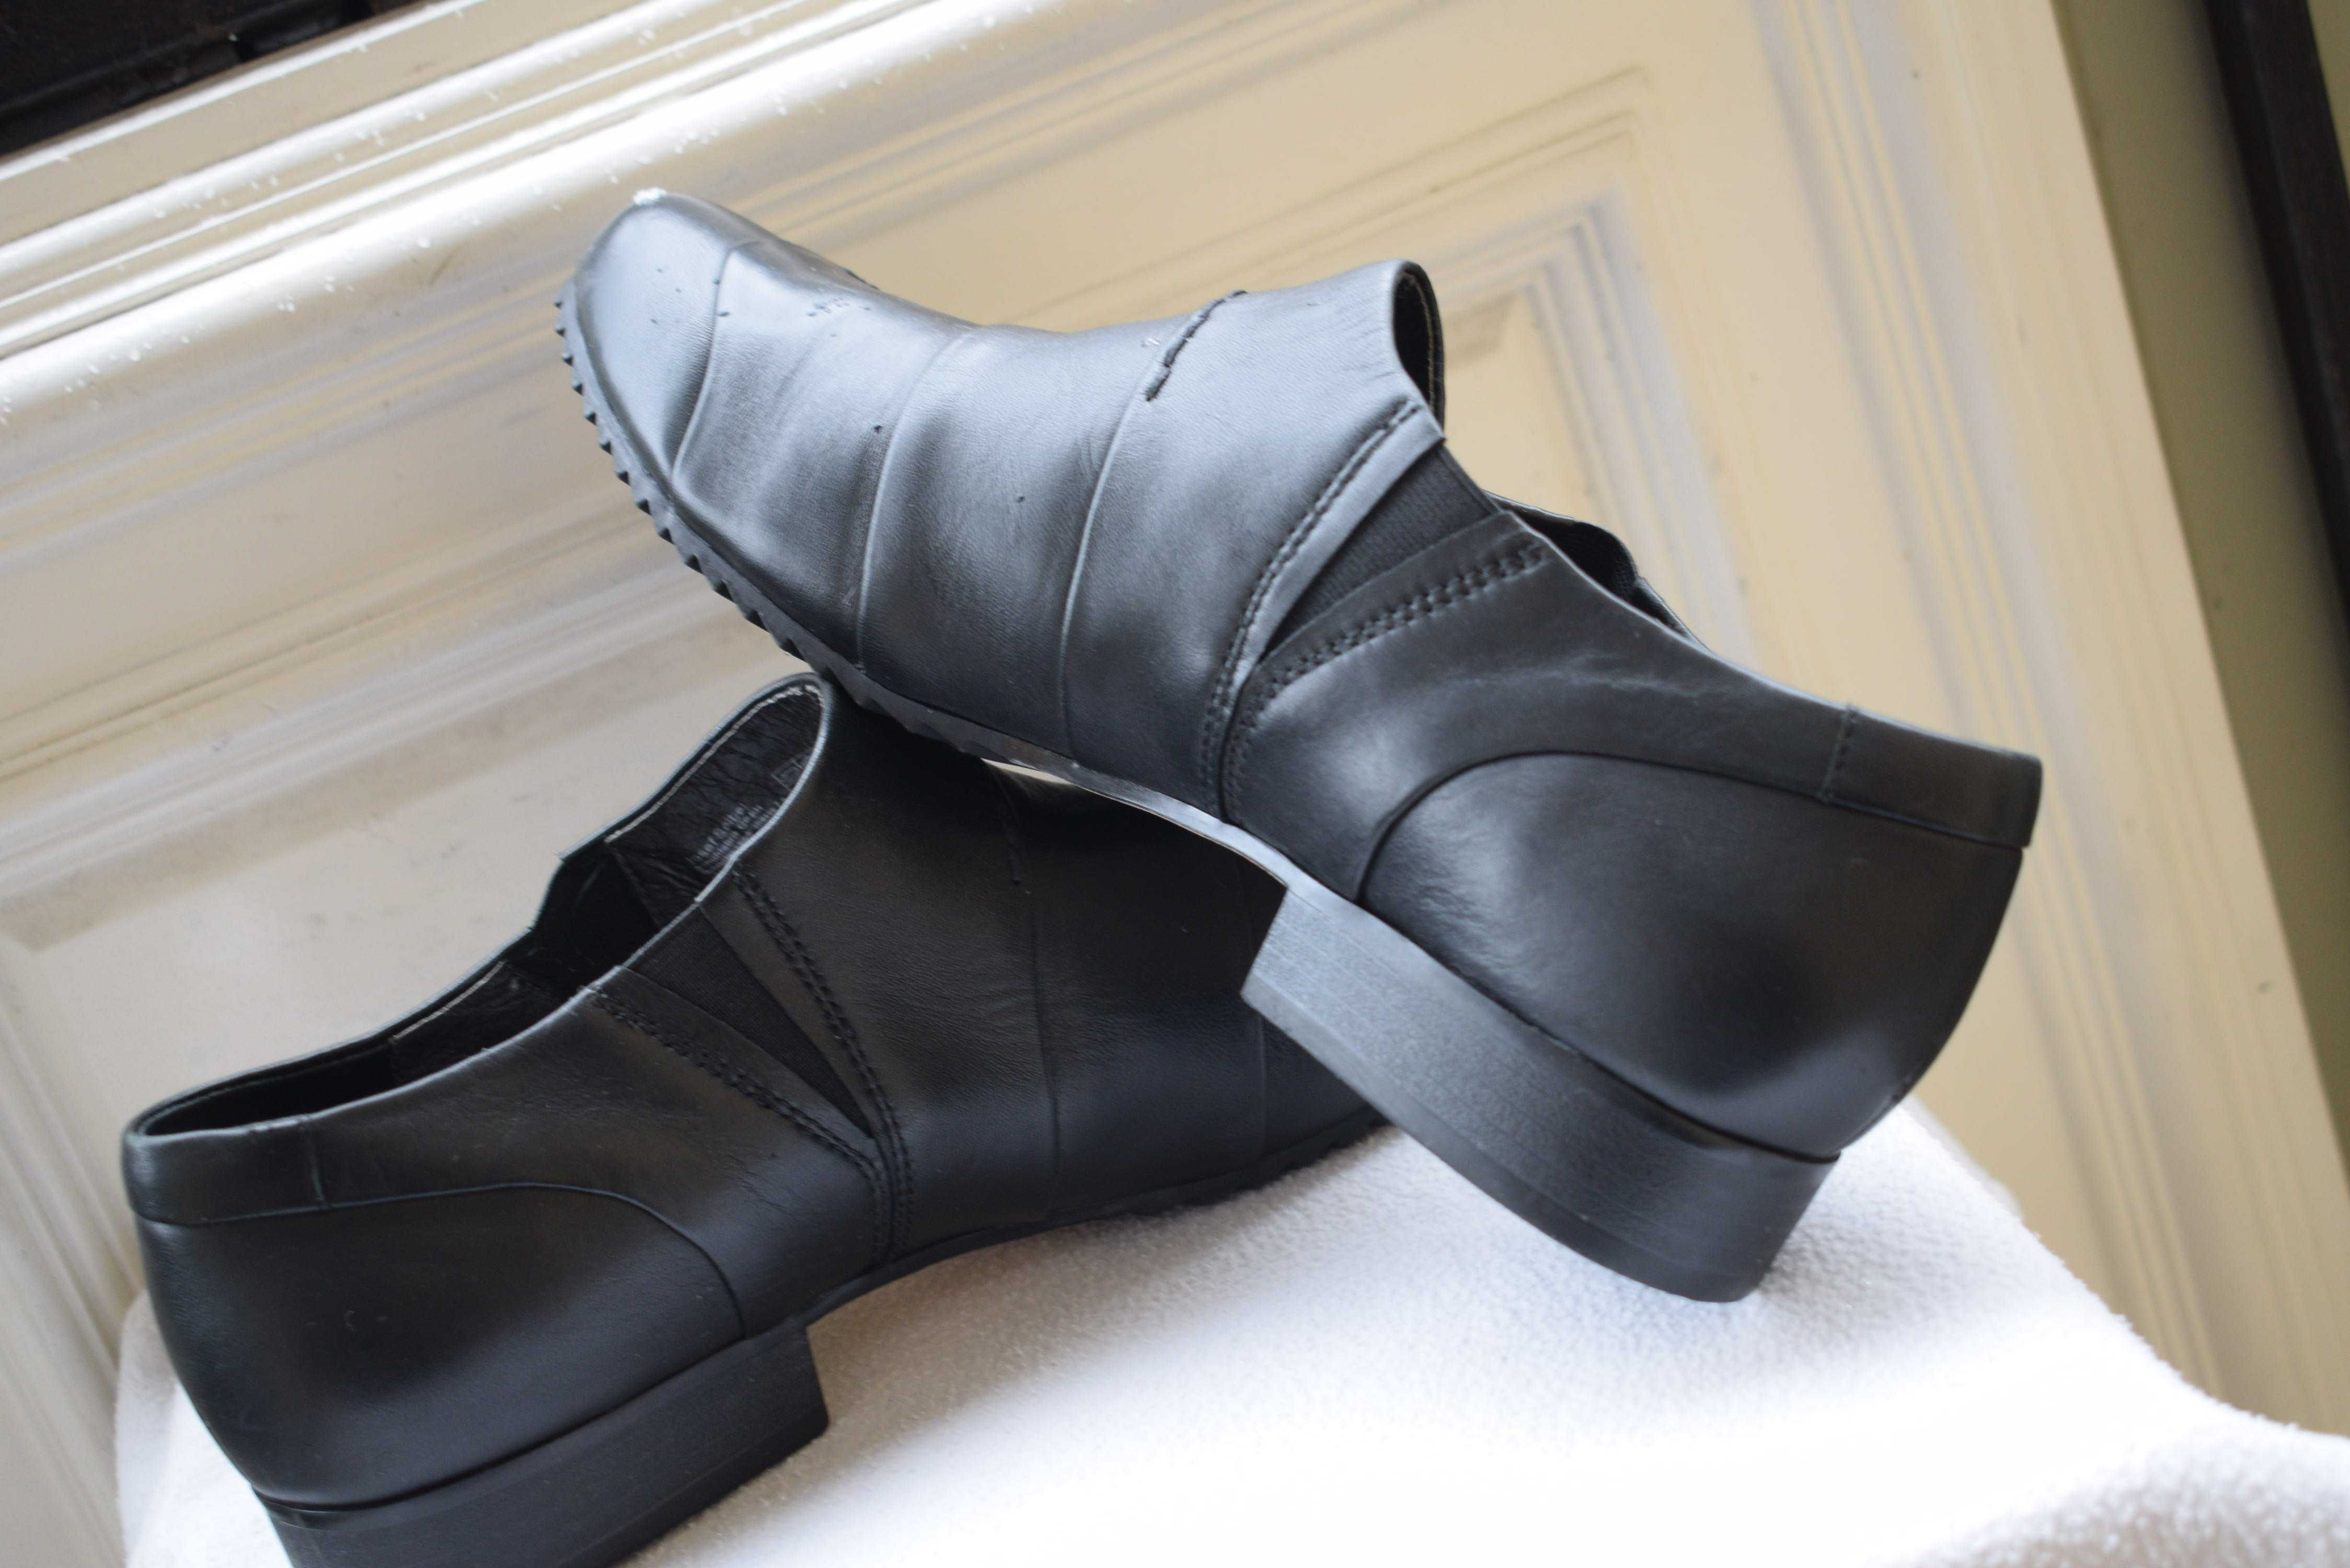 кожаные туфли балетки лодочки слипоны Josef Seibel  р. 43 27,5 см